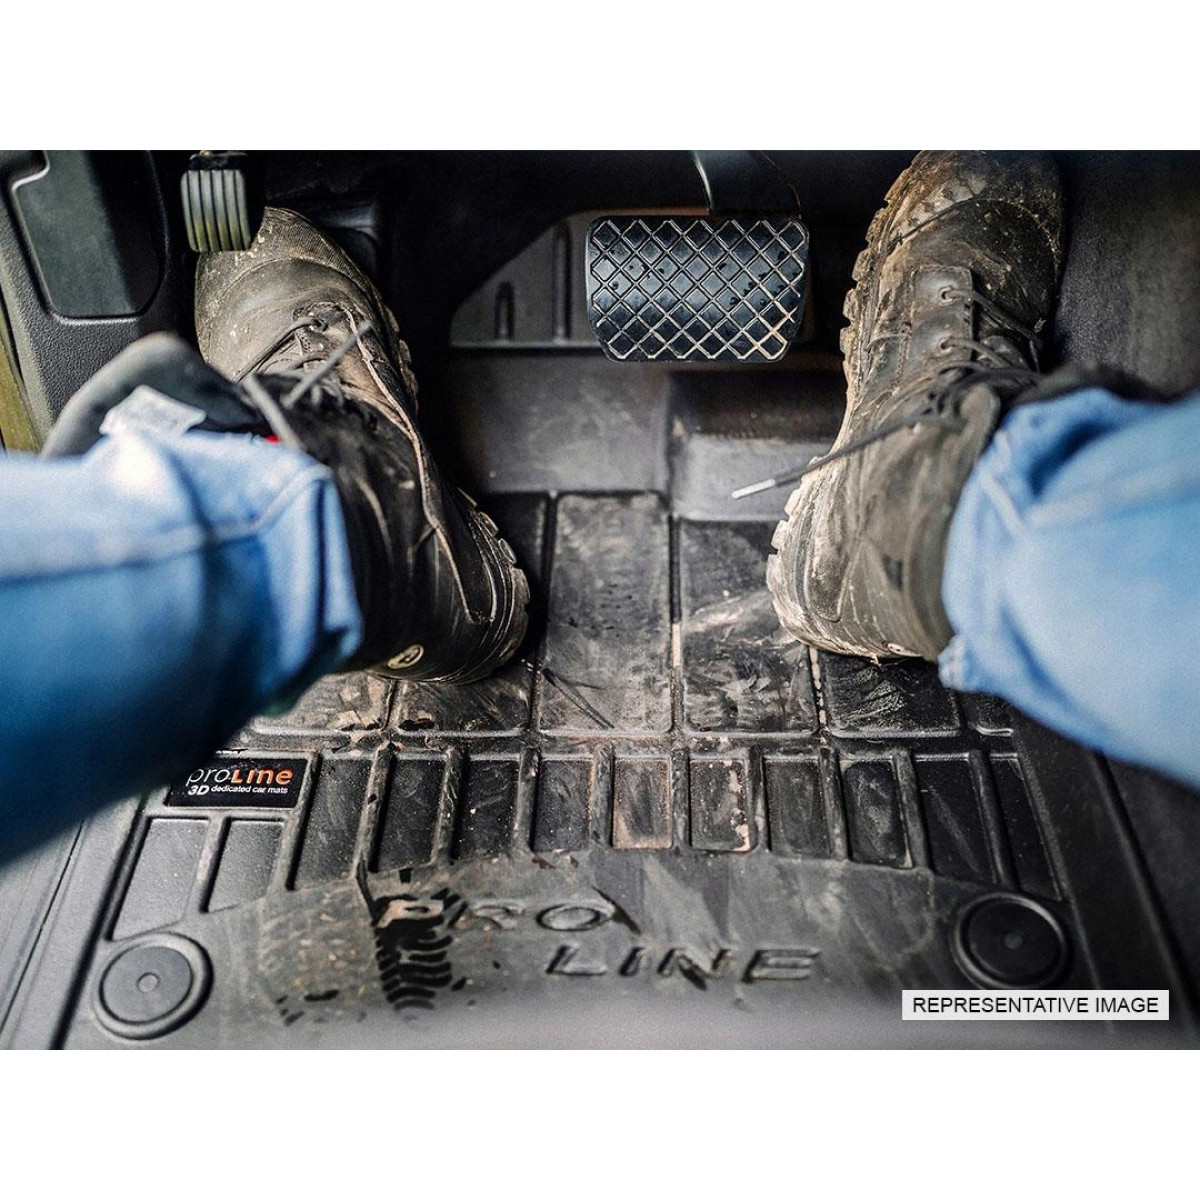 Guminiai kilimėliai Proline Jeep Grand Cherokee IV 2010-2021m. / paaukštintais kraštais